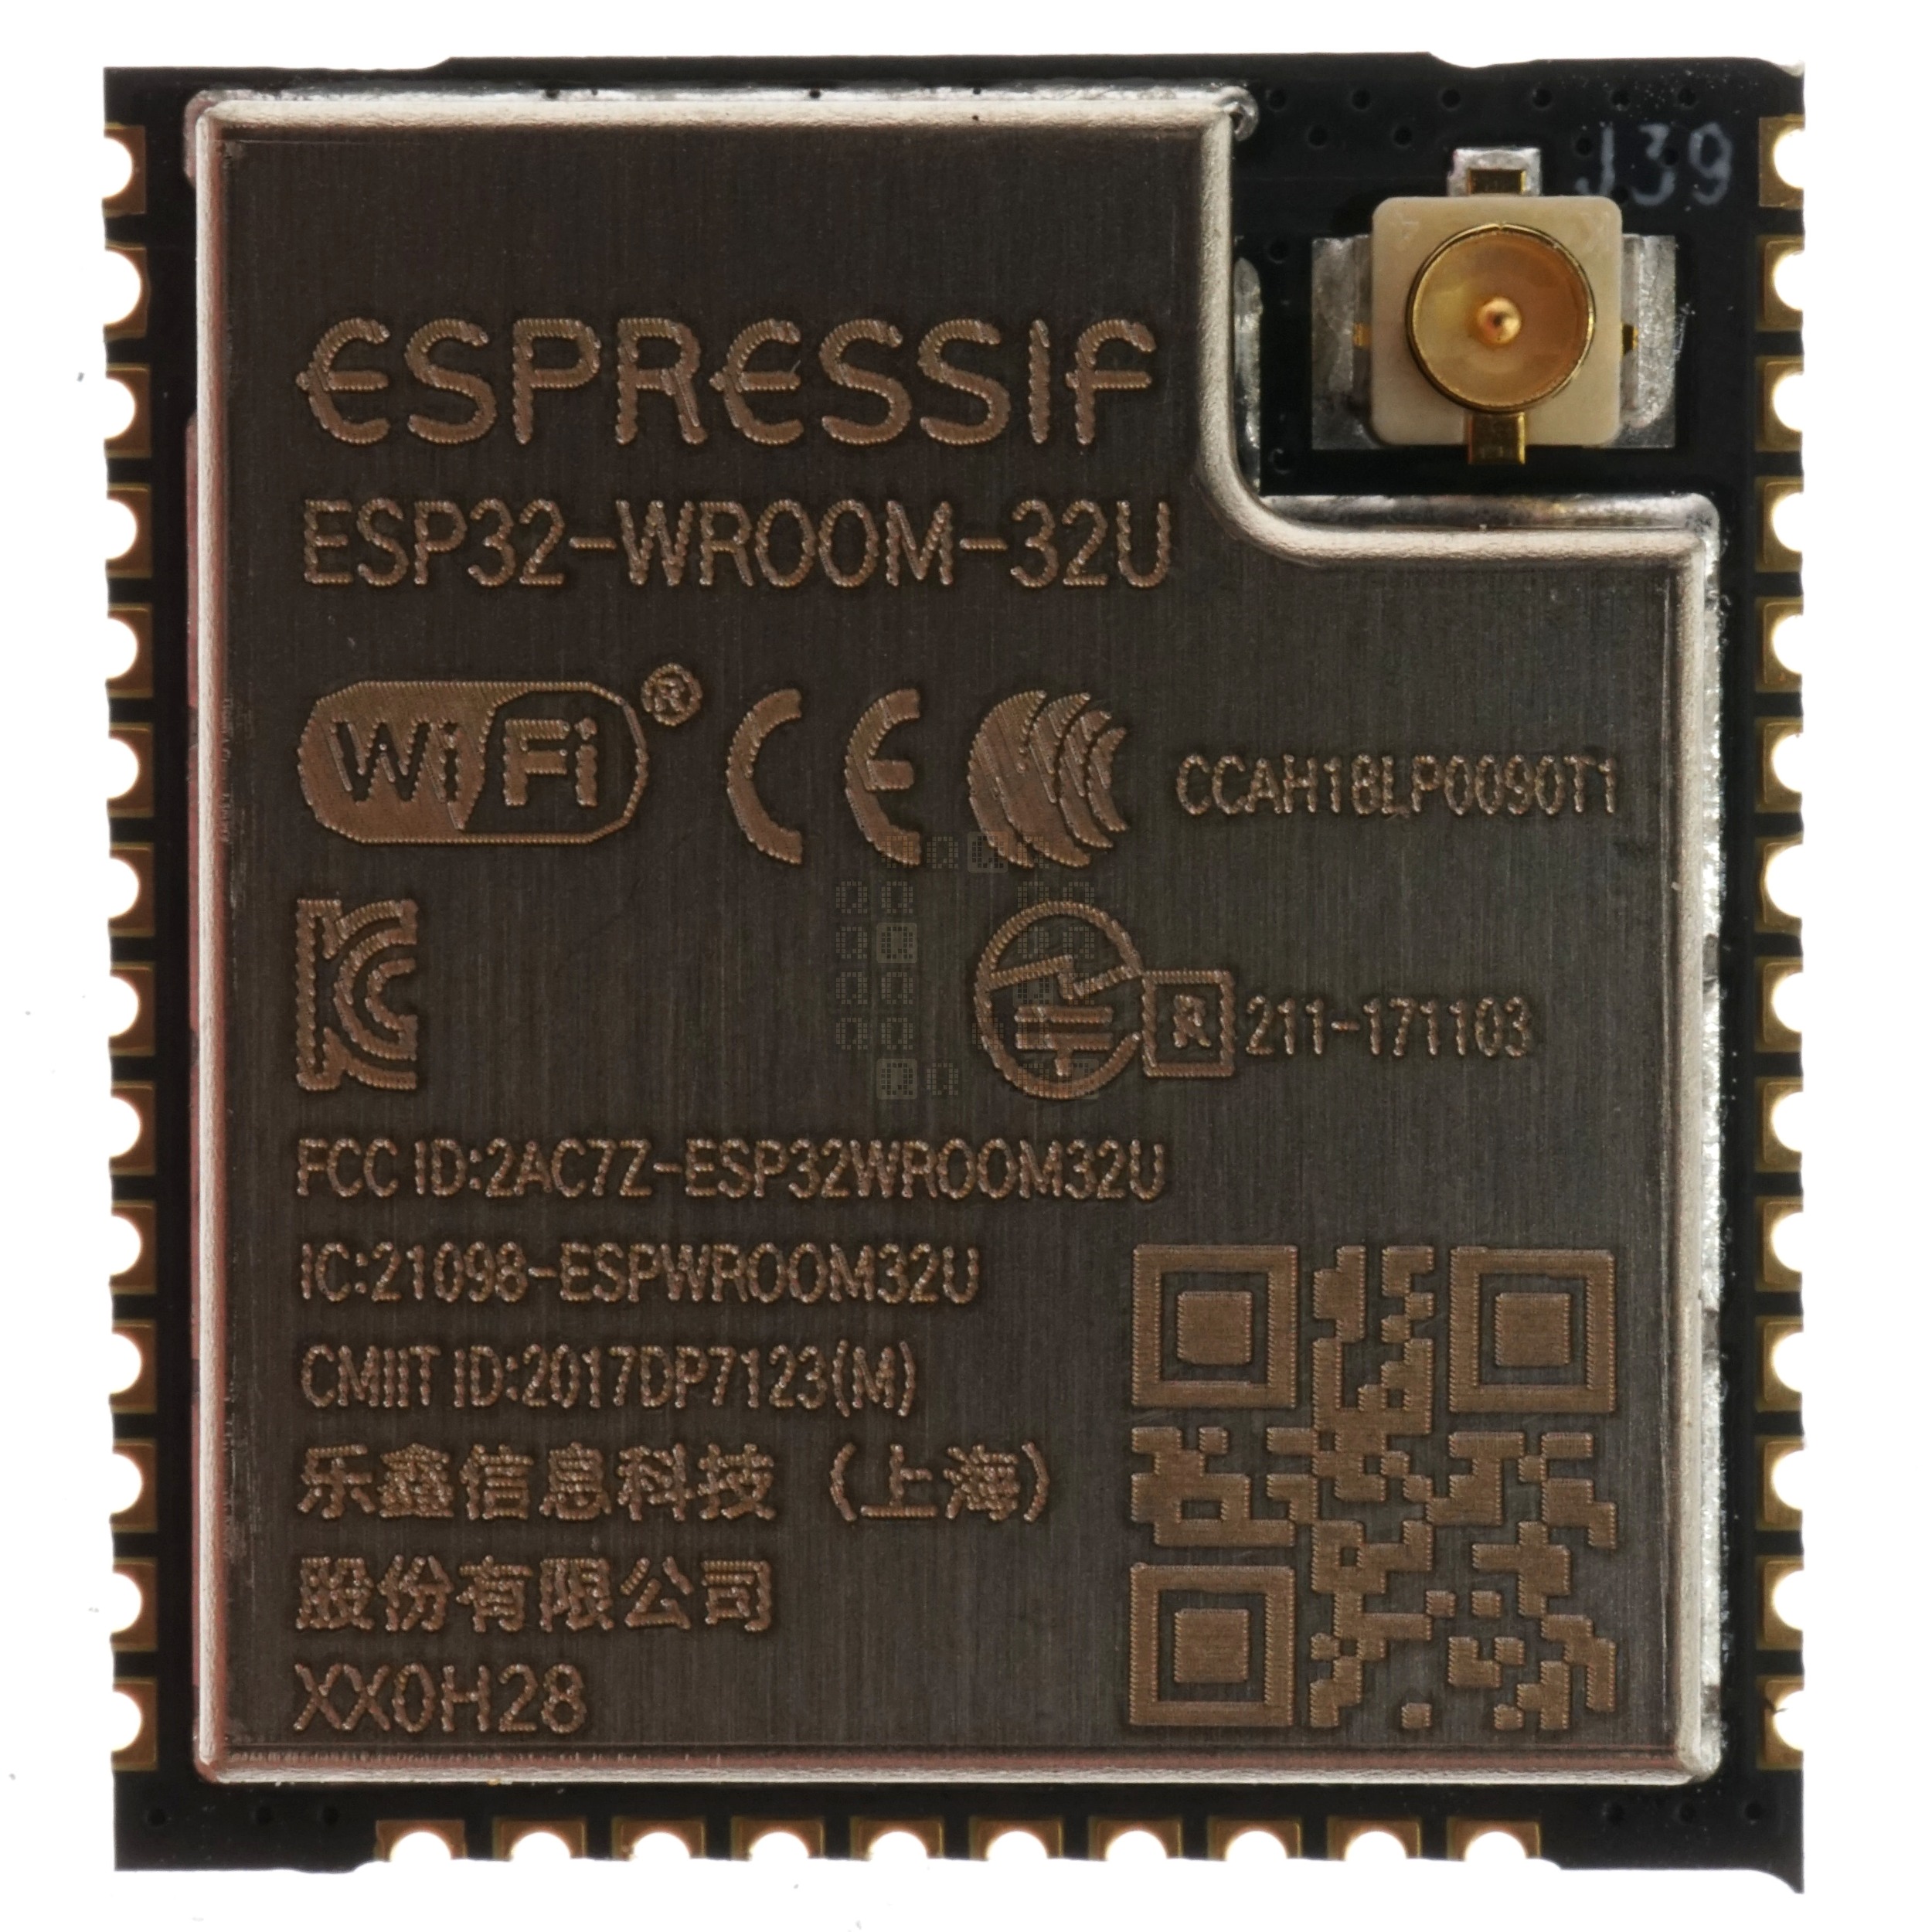 Espressif ESP32-WROOM-32U-0H28 Microprocessor with Wi-Fi & Bluetooth, 16MB Flash